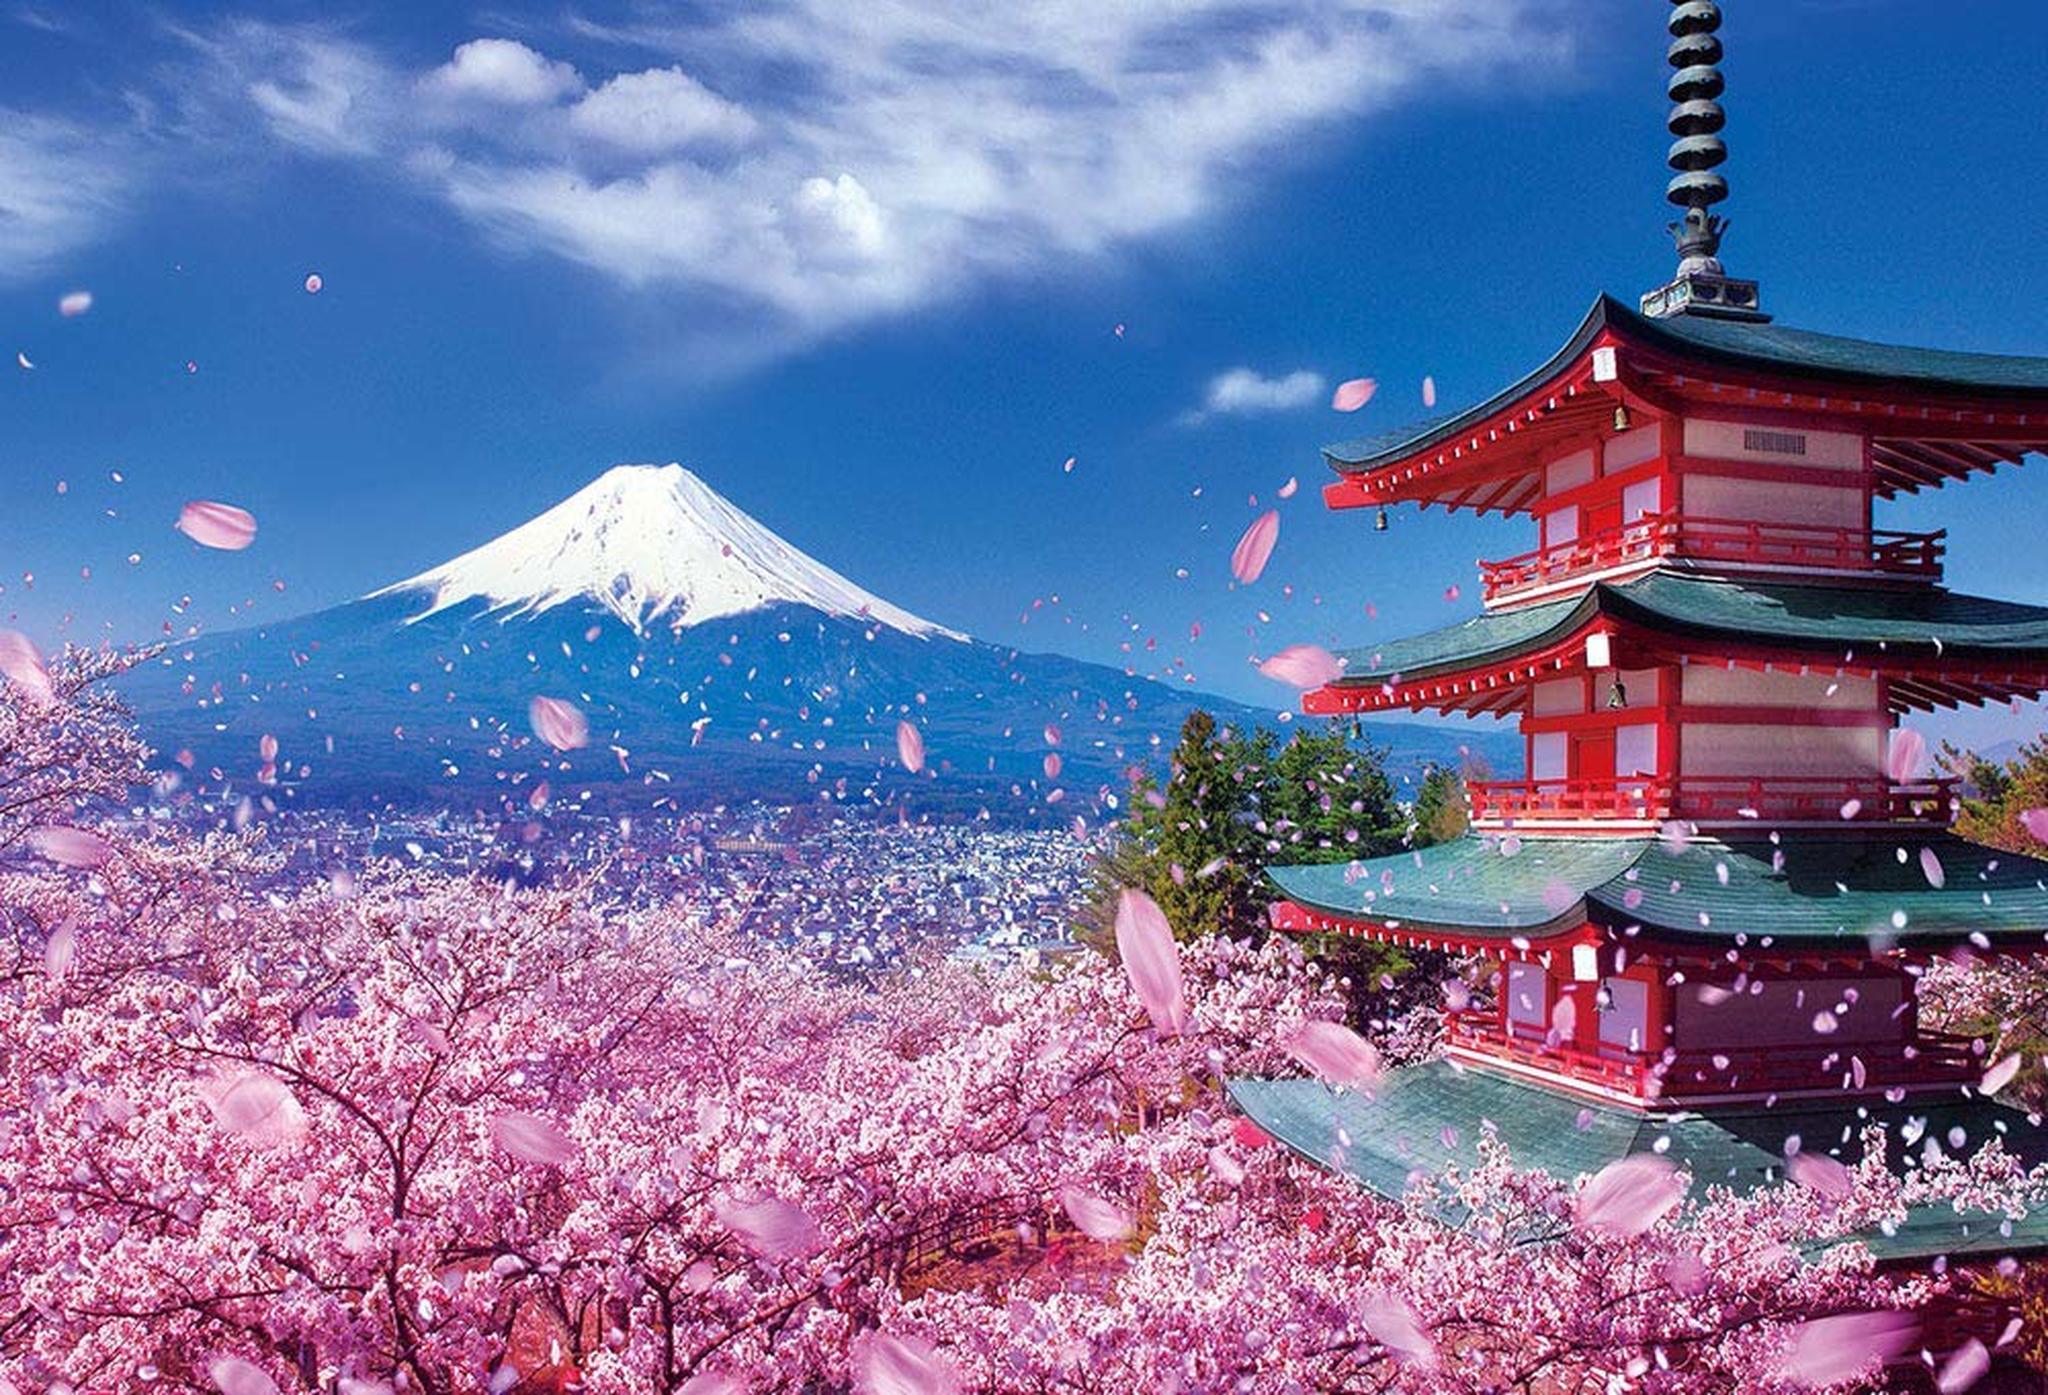 Đất nước “đẹp bất chấp thời gian” đích thị là Nhật Bản, xem ảnh hoa anh đào  nở rộ về đêm mà chỉ biết ngỡ ngàng vì quá ảo! - Netizen -